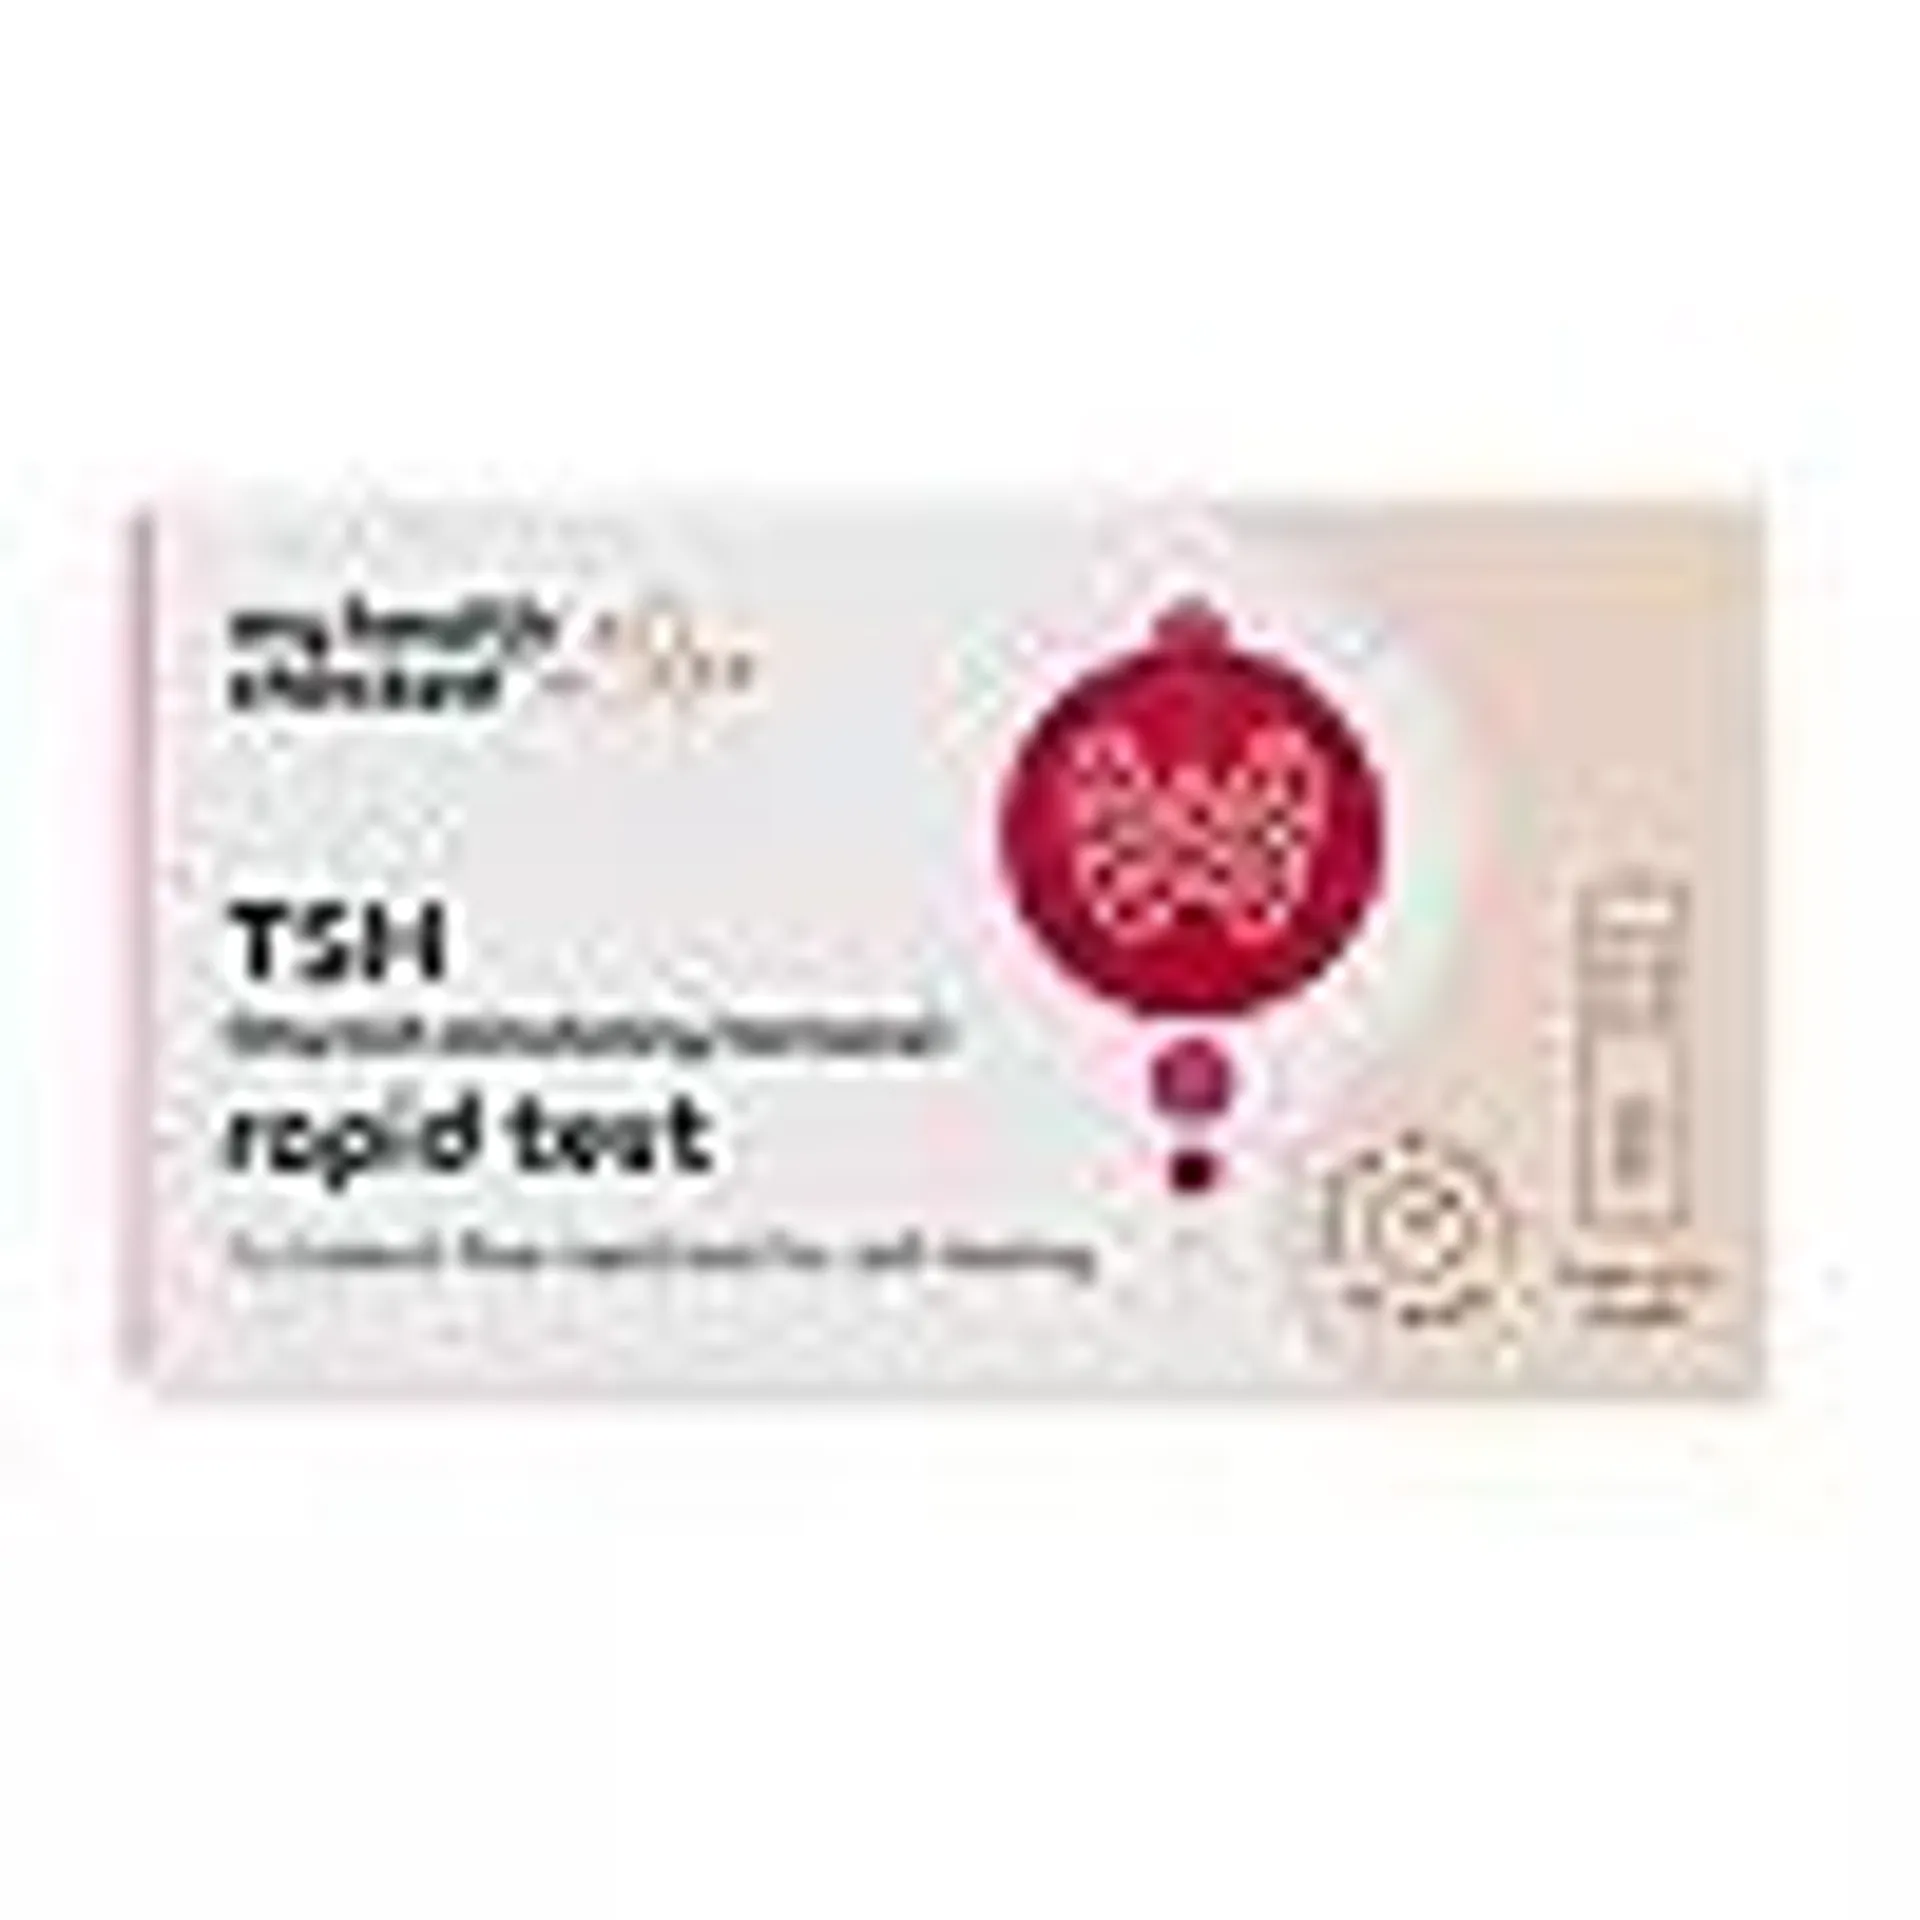 MyHealthChecked Thyroid Stimulating Hormone (TSH) Rapid Test